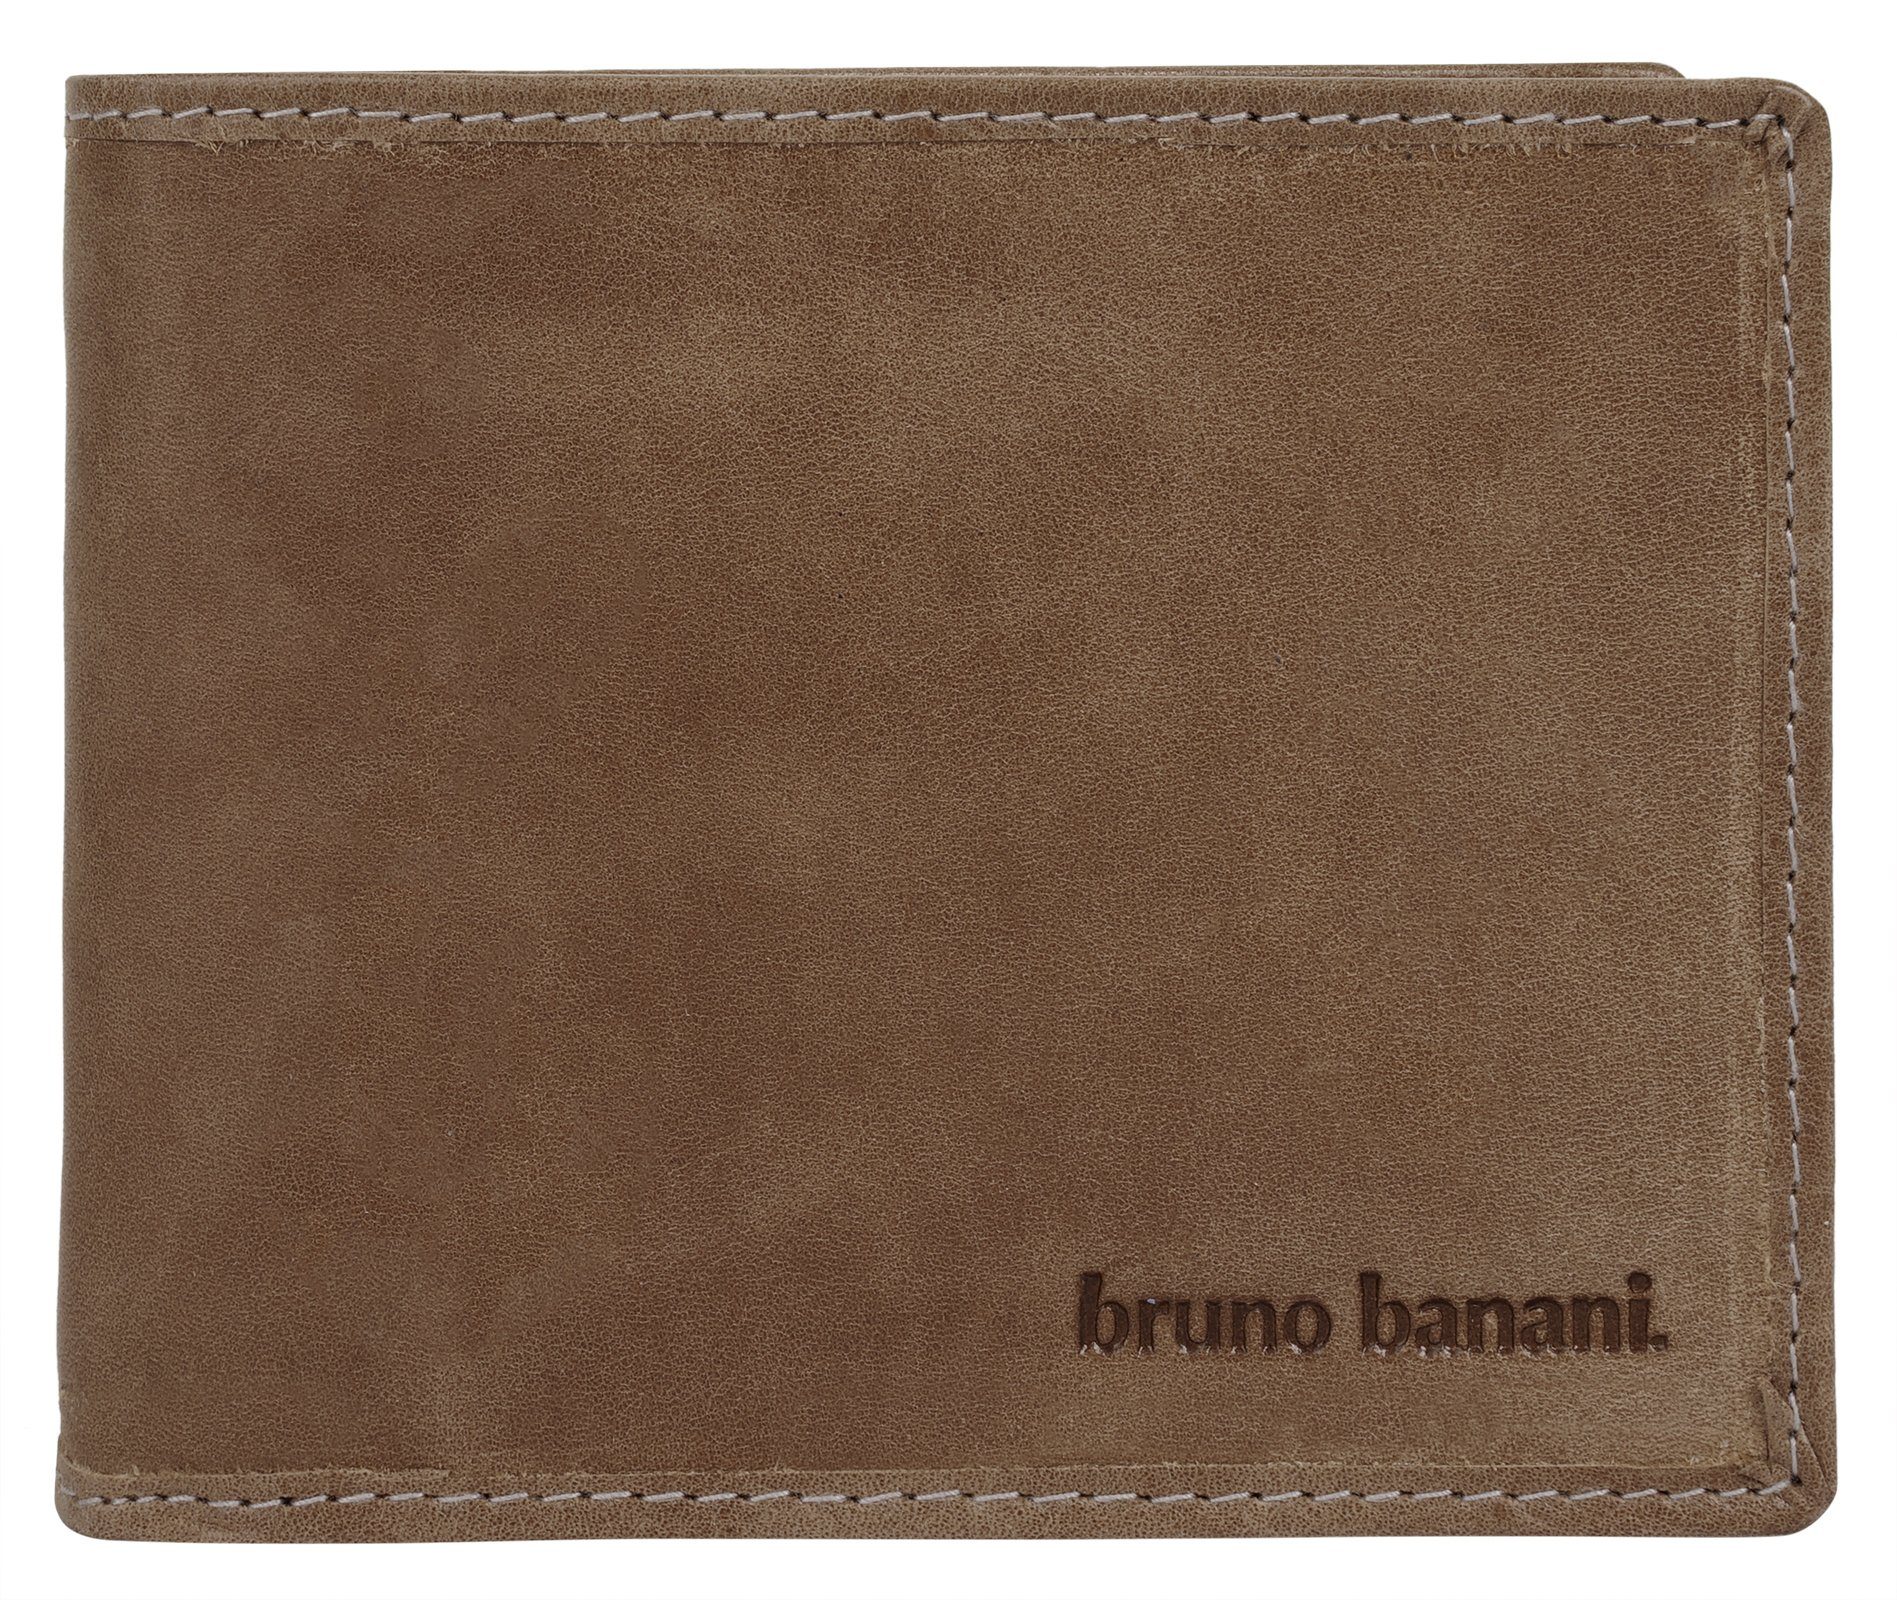 Bruno Banani Geldbörse, echt Leder, 2 Schein-, 9 Karten-, 4 Einsteckfächer